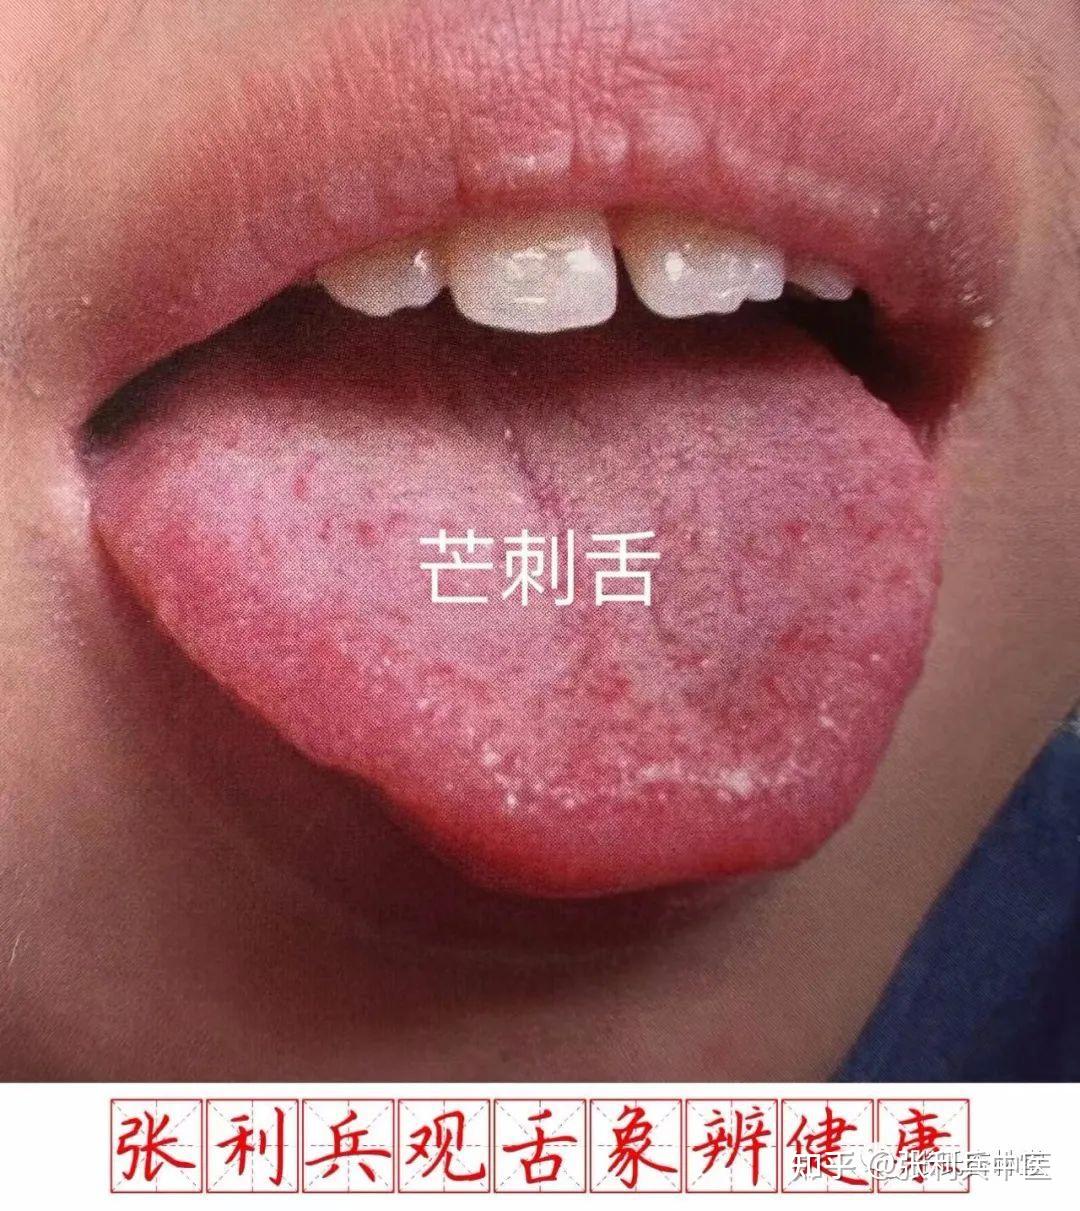 舌头上长乳头状瘤图片,舌头长肉芽 - 伤感说说吧